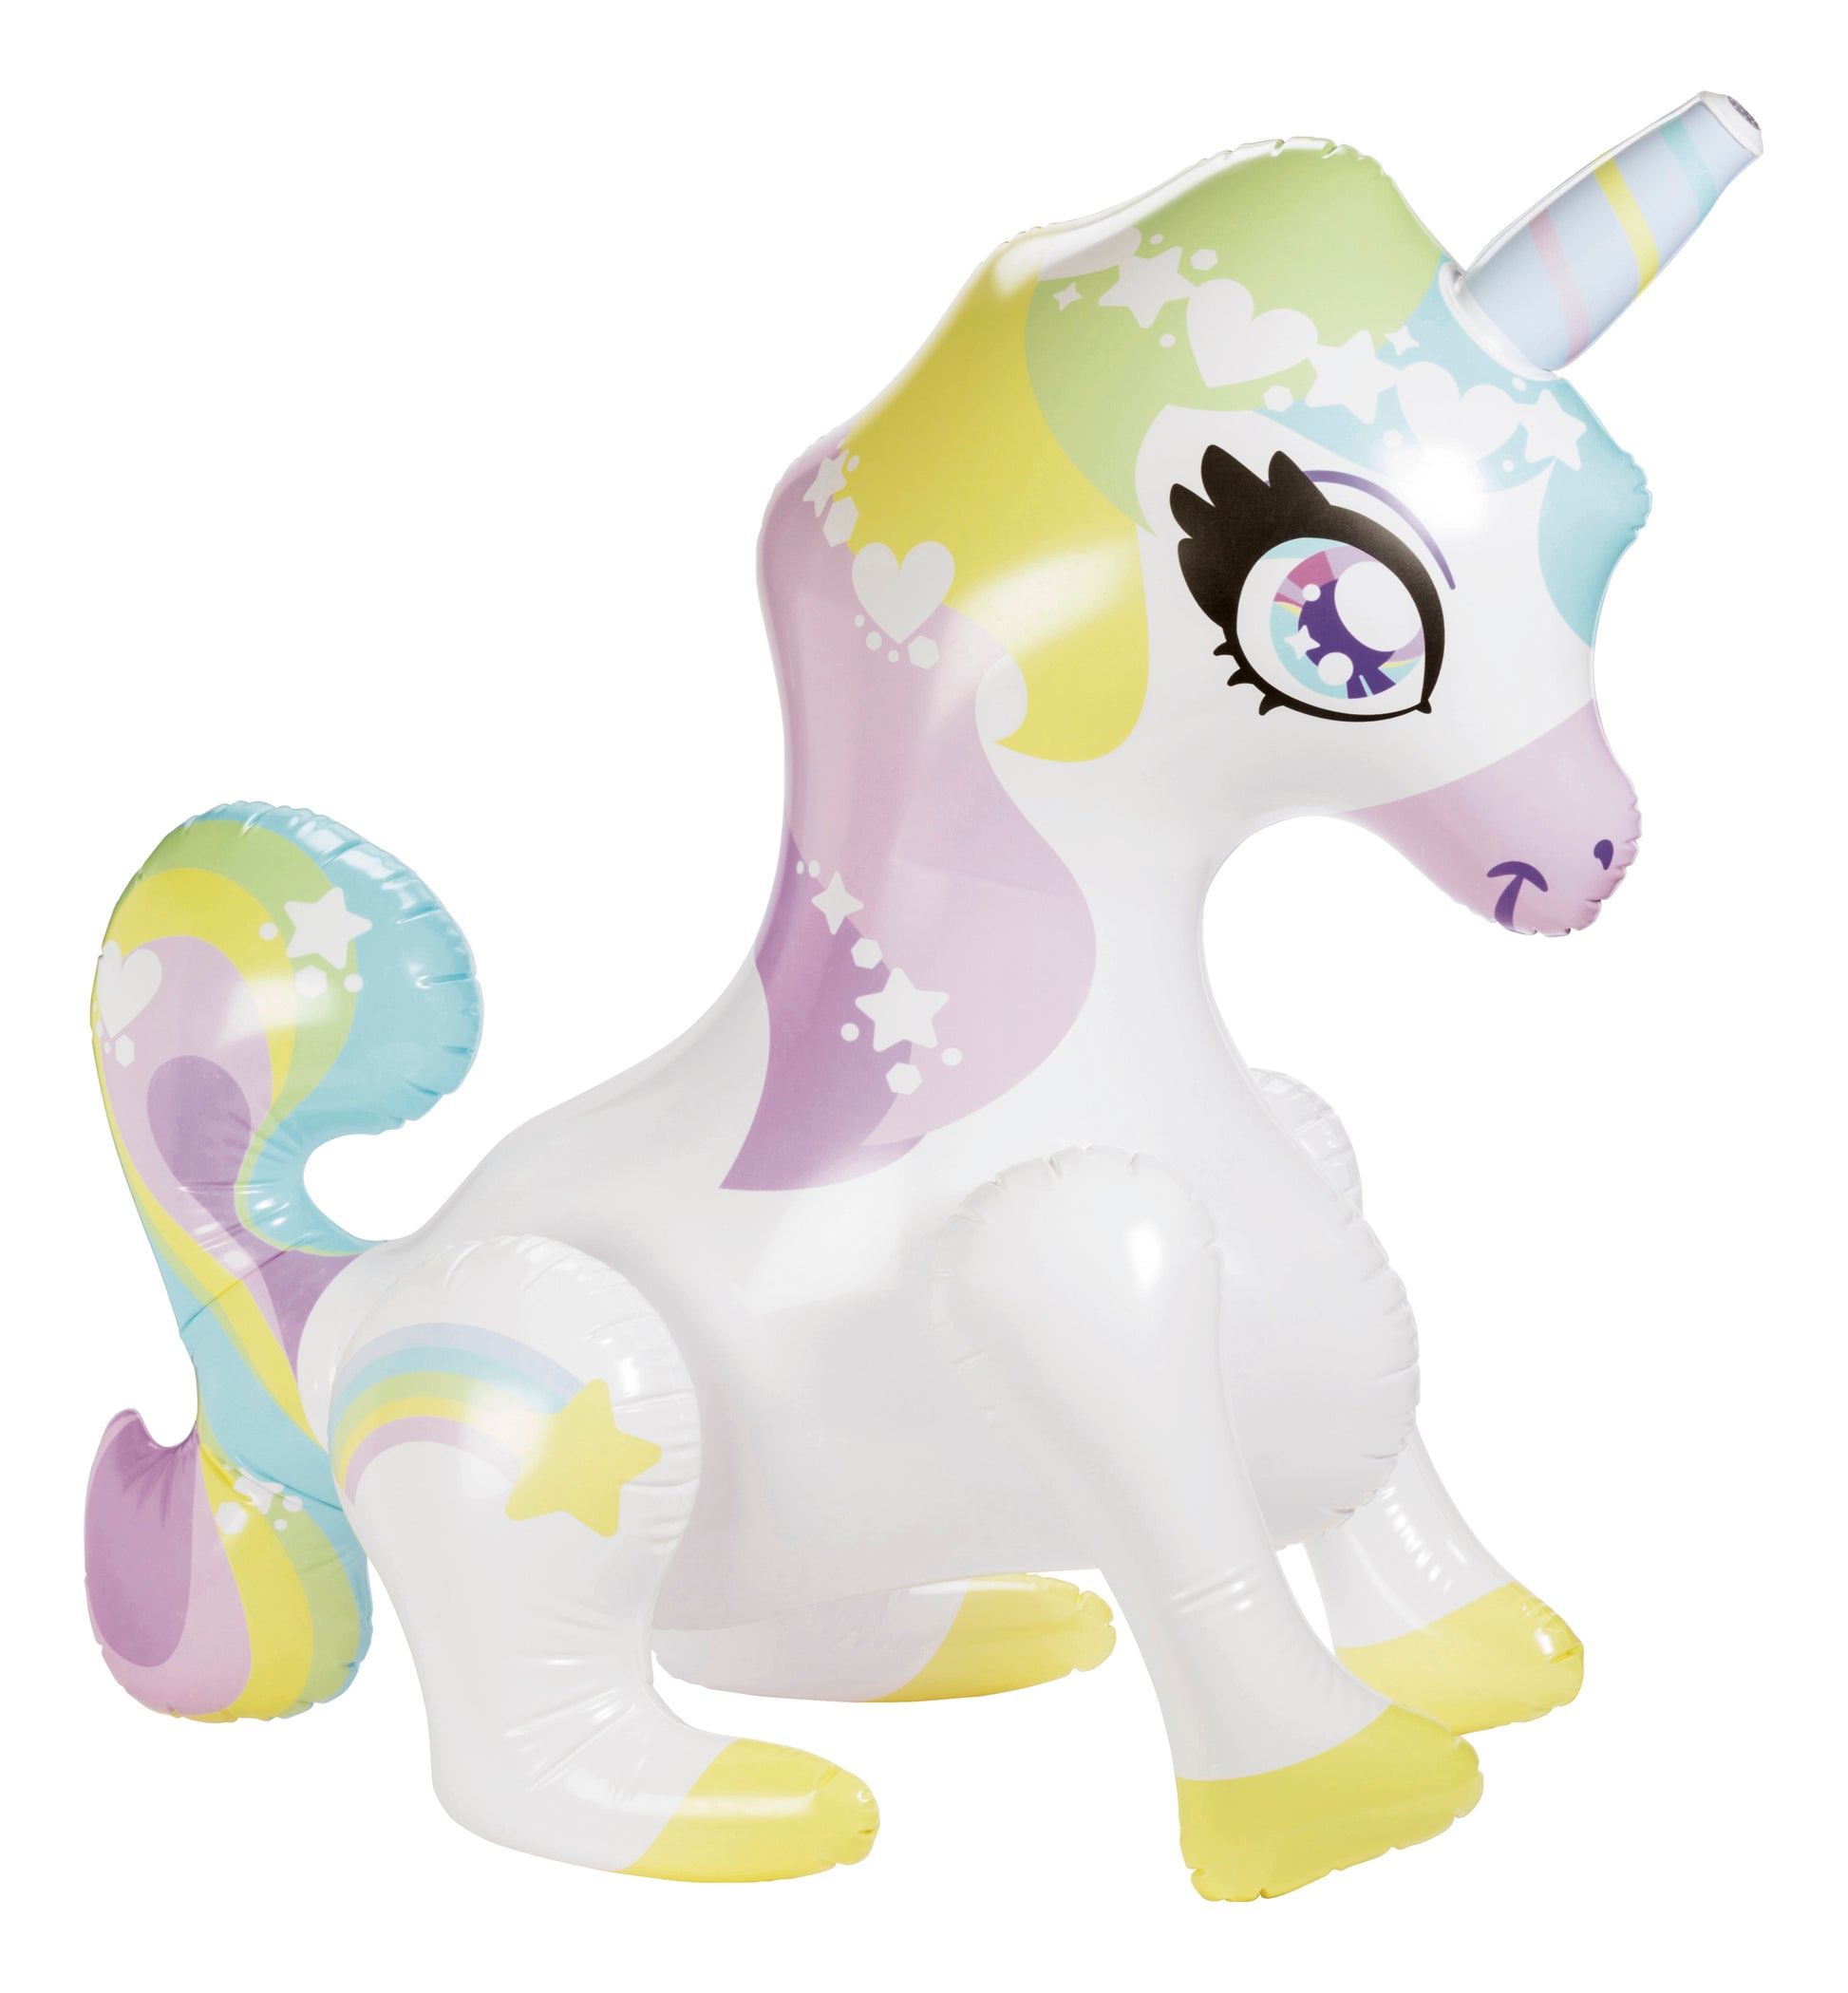 Inflatable unicorn Mist-Ical Uni Sprinkler